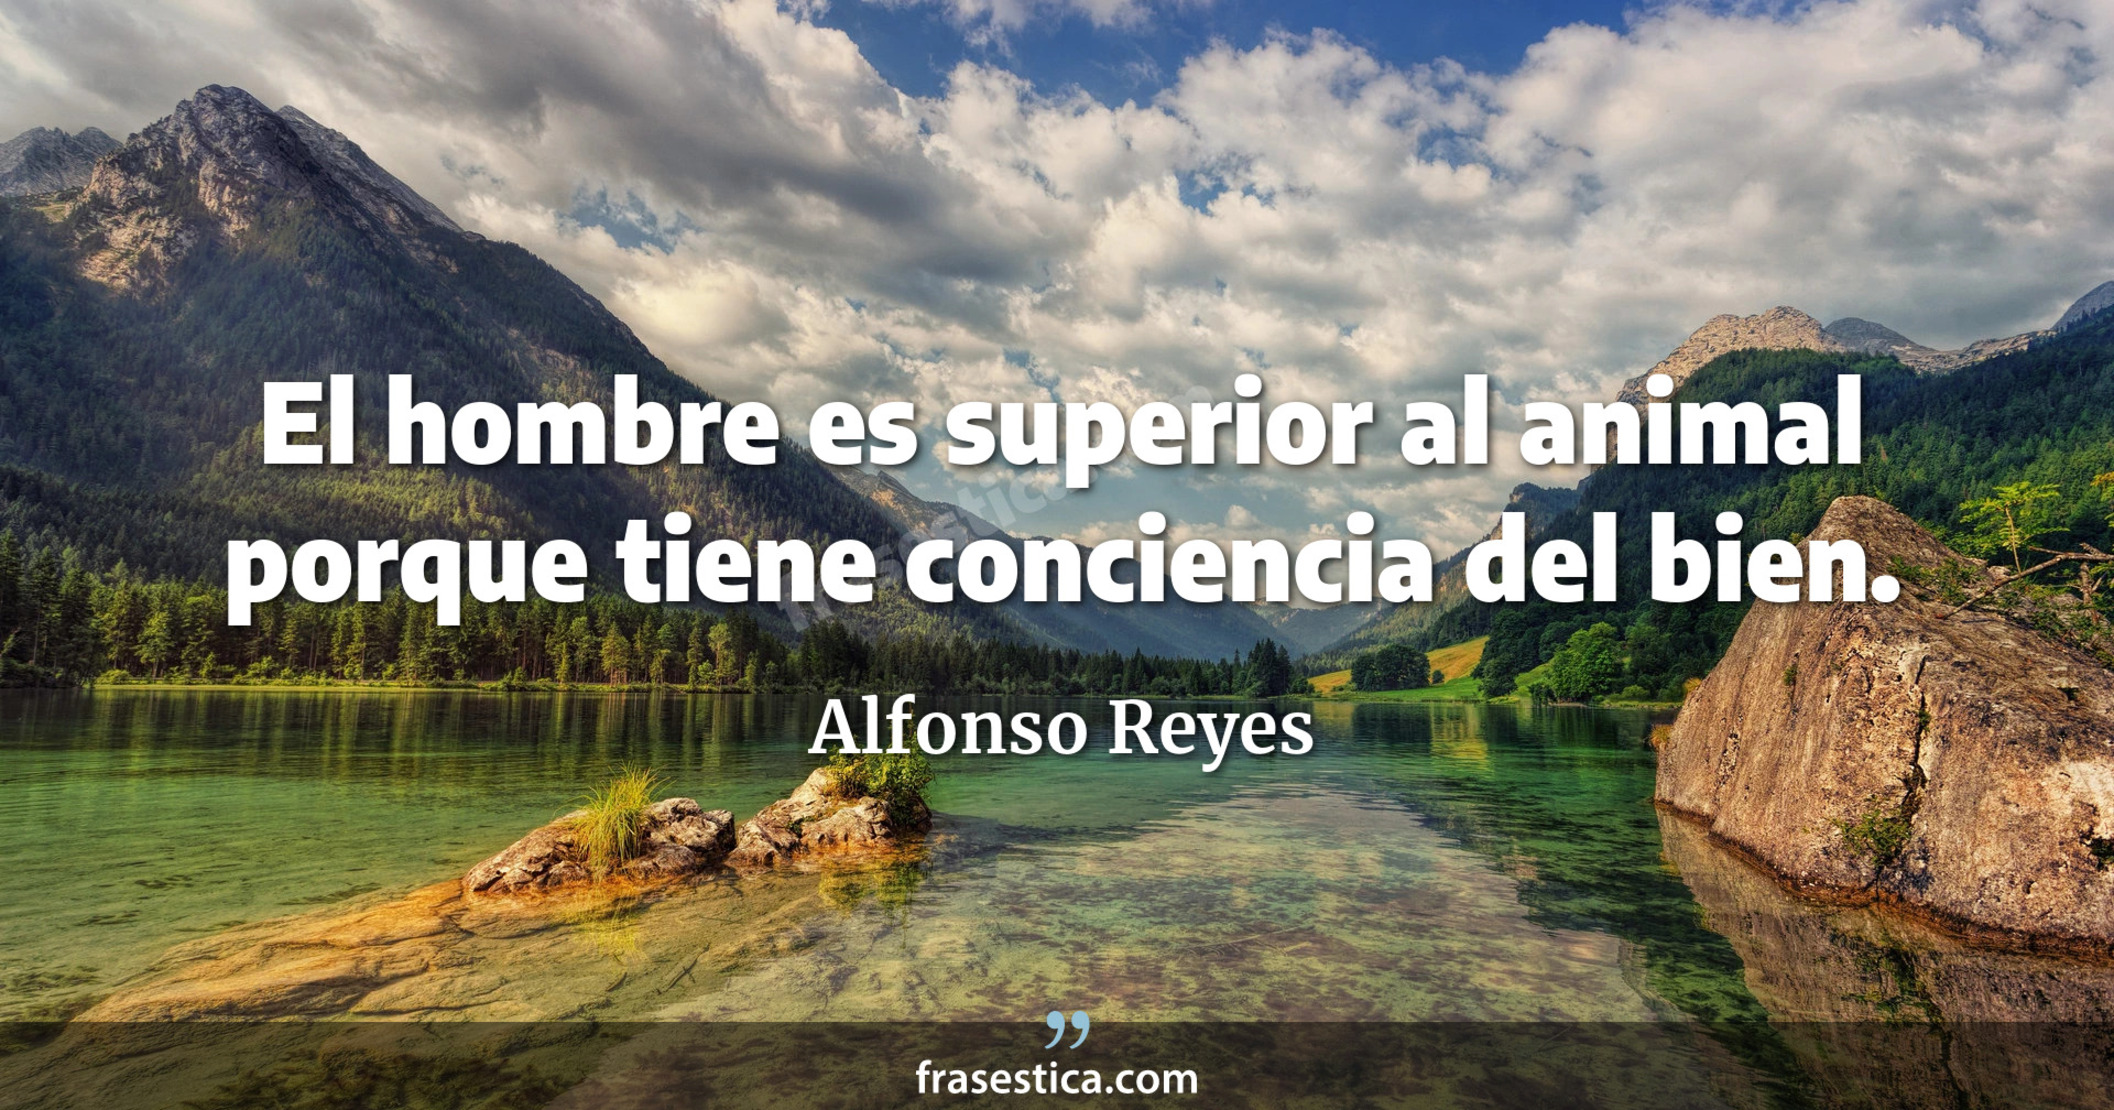 El hombre es superior al animal porque tiene conciencia del bien. - Alfonso Reyes